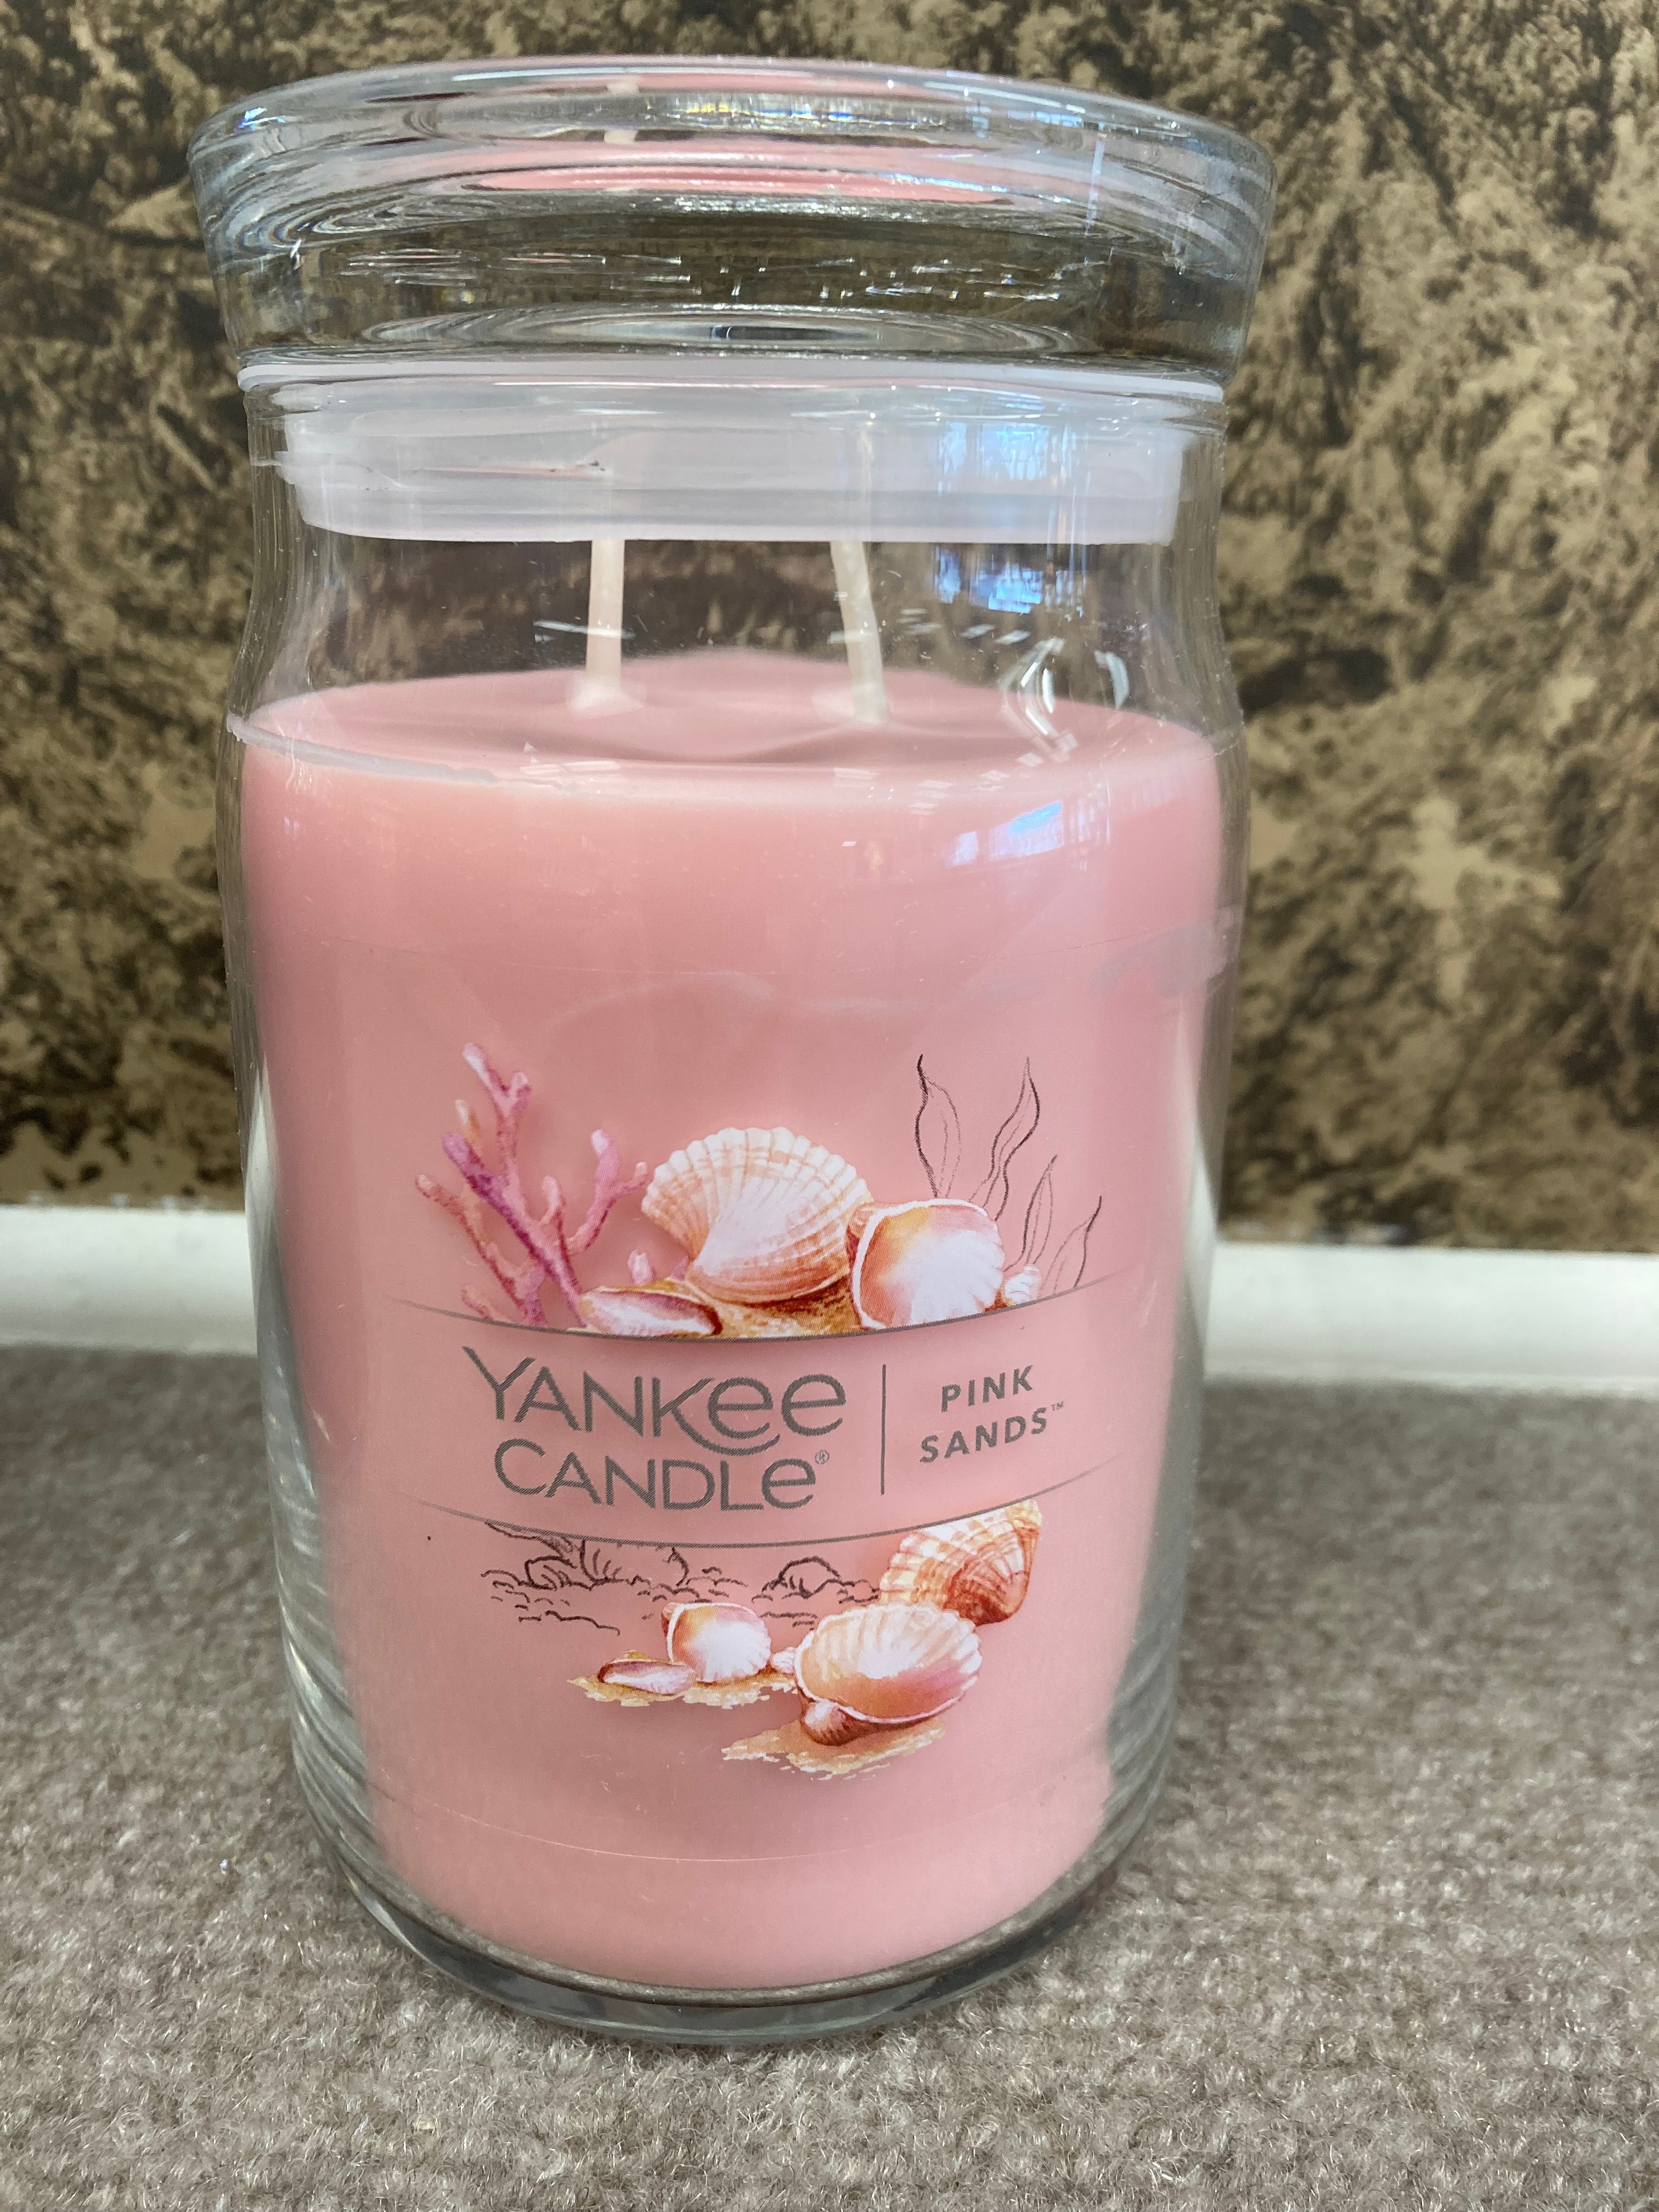 Yankee Candle Pink Sands - 22 oz pkg